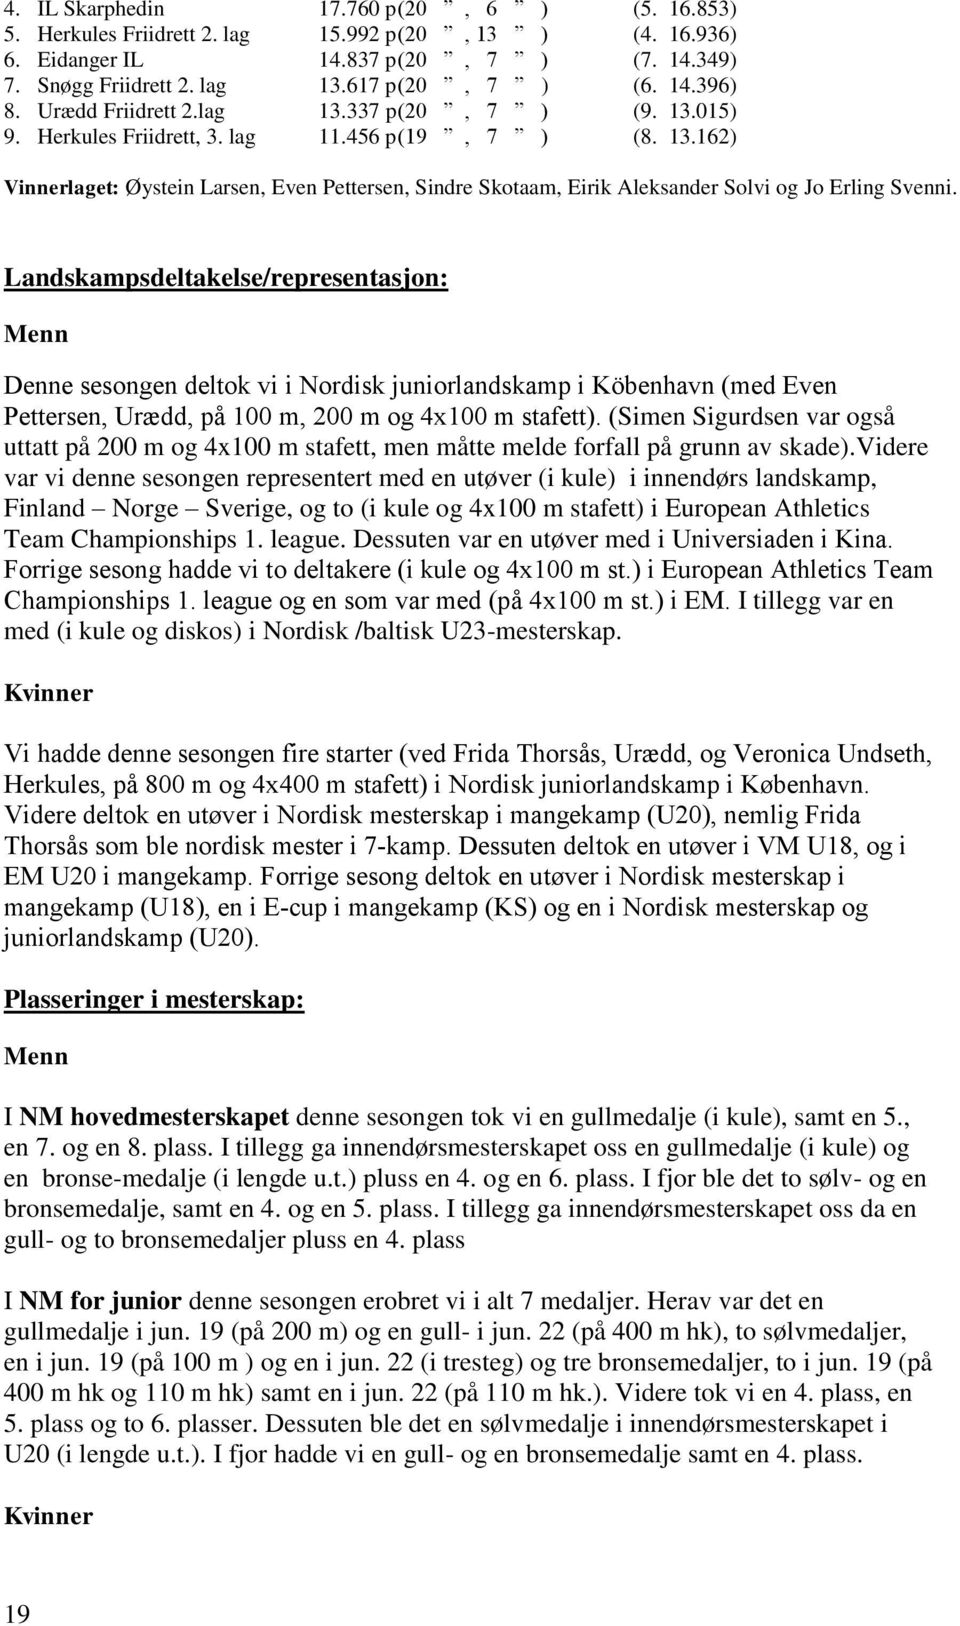 Landskampsdeltakelse/representasjon: Menn Denne sesongen deltok vi i Nordisk juniorlandskamp i Köbenhavn (med Even Pettersen, Urædd, på 100 m, 200 m og 4x100 m stafett).